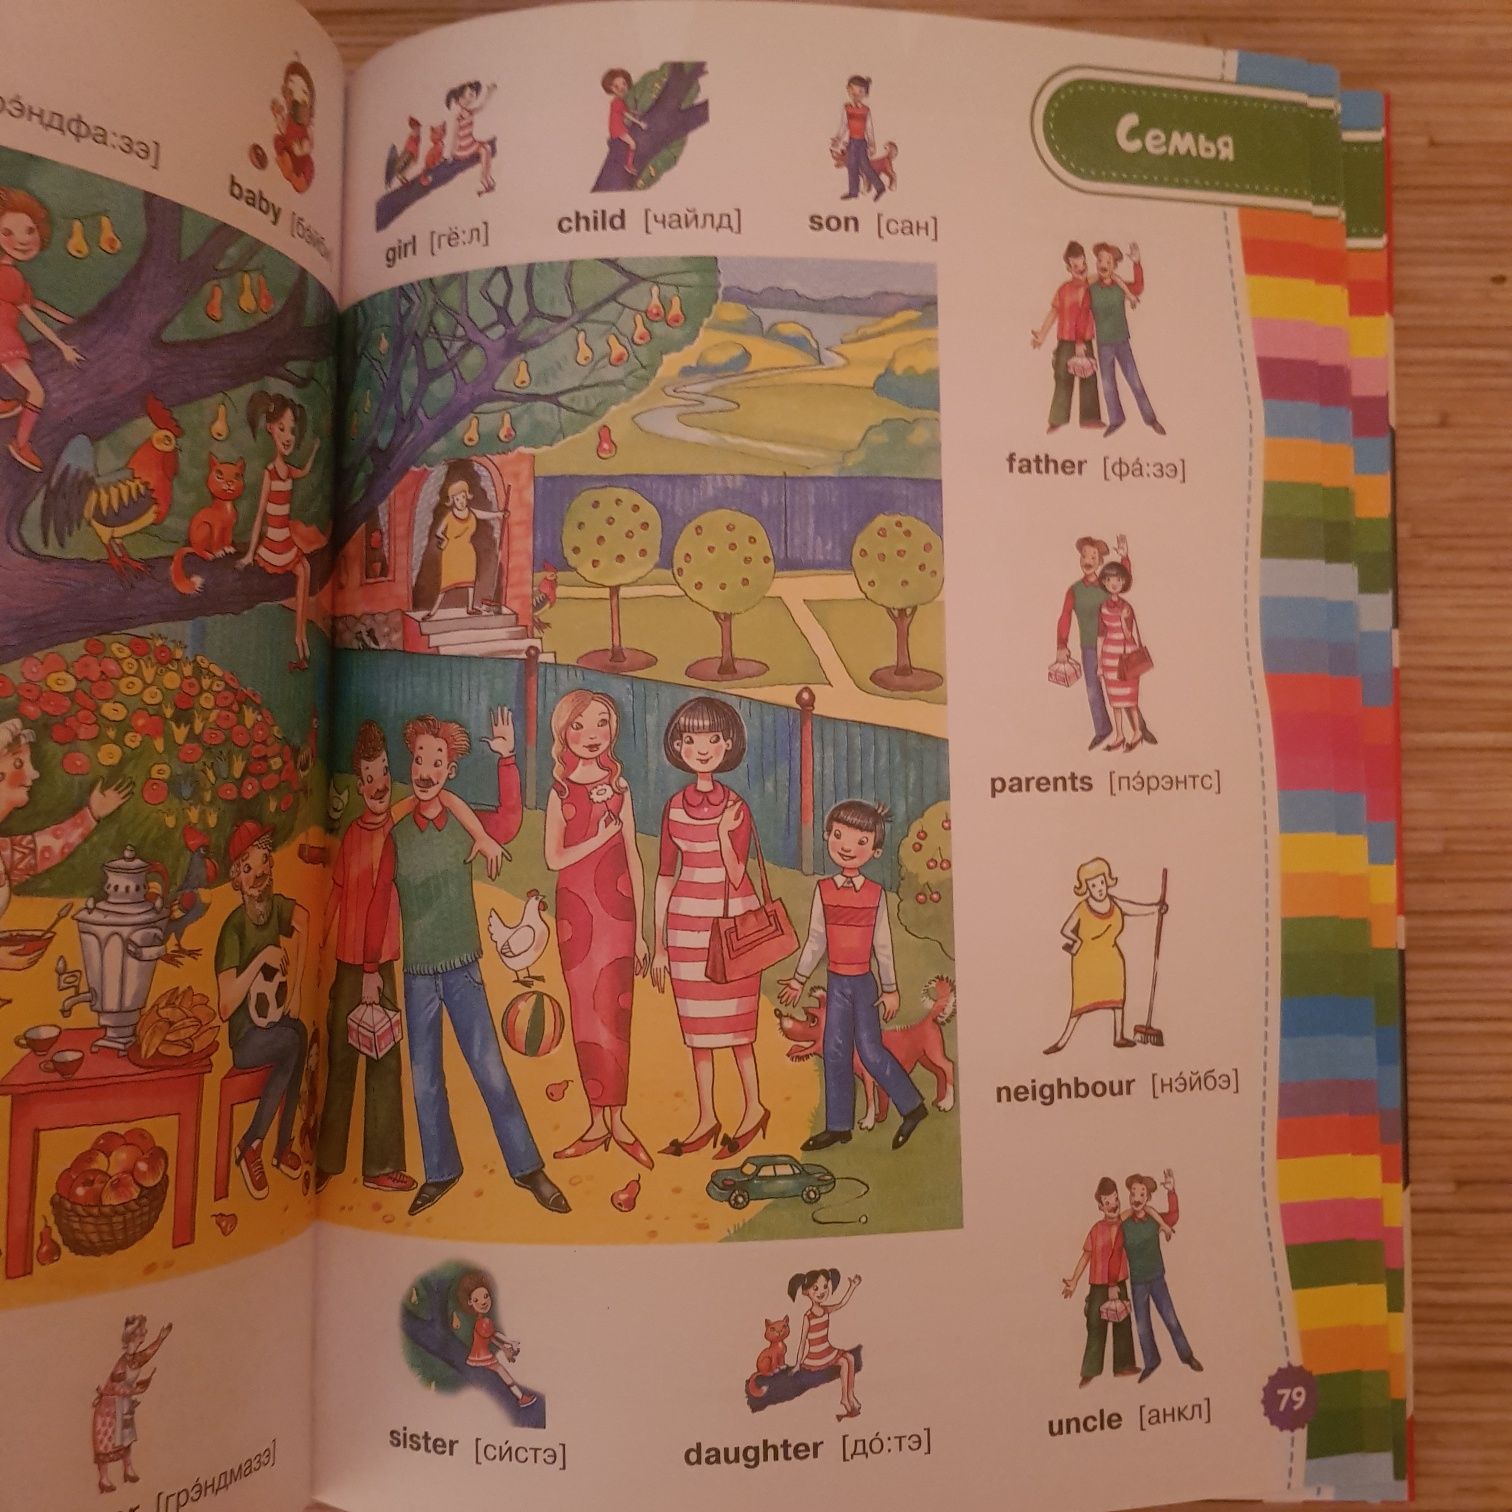 Иллюстрированный англо-русский словарь для детей